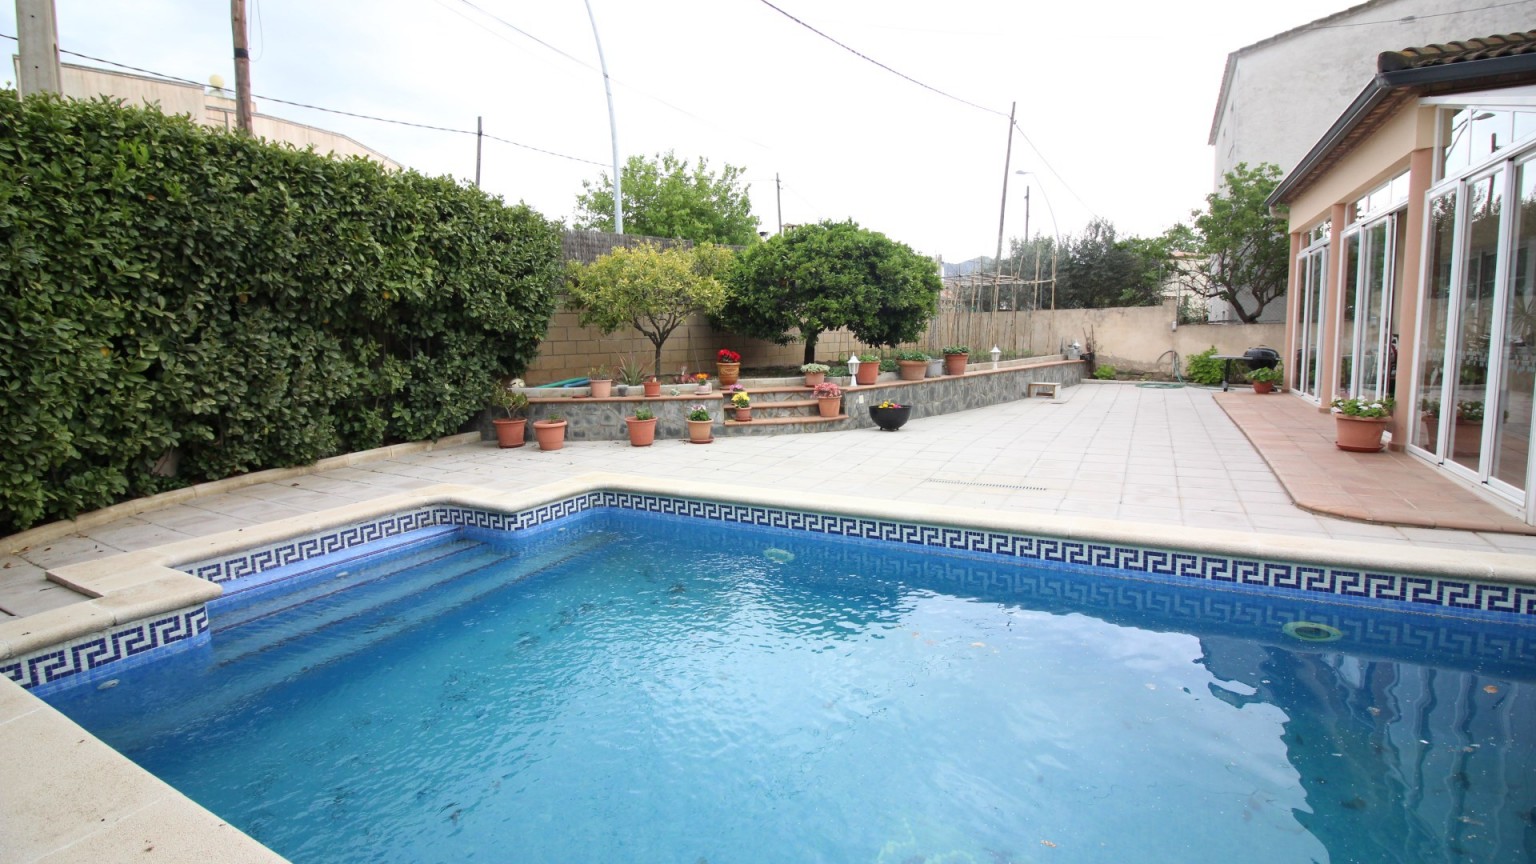 En venta casa de 3 plantas en Mas Mates (Roses). Consta de 5 habitaciones y 3 baños. Con piscina privada, y jardín alrededor,  un huerto y un garaje muy grande.